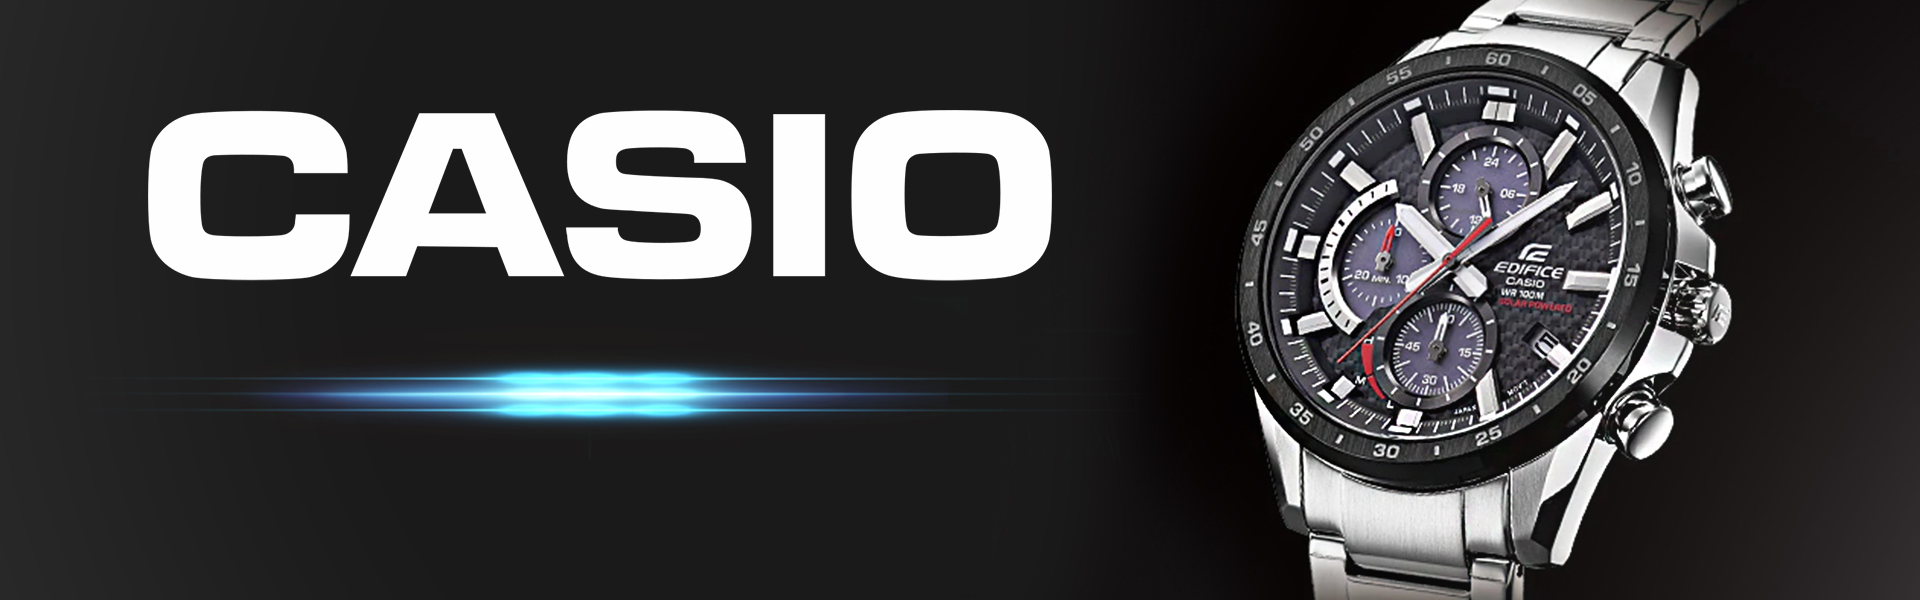 Vīriešu rokas pulkstenis Casio G-Shock G-2900F-8VER 891069397 Casio